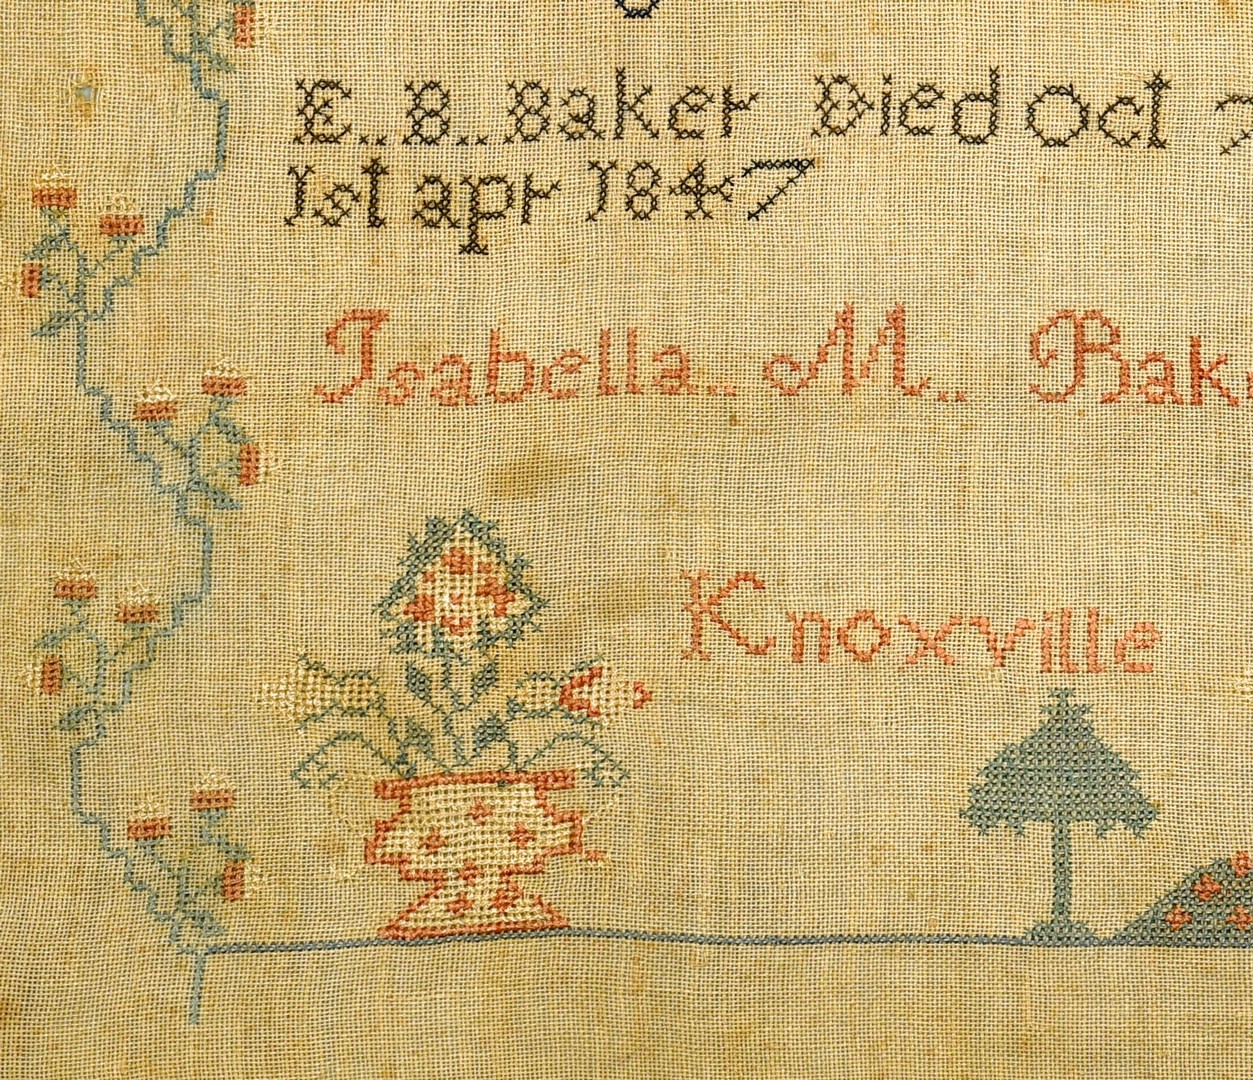 Lot 264: Knoxville, TN Sampler, I. Baker, 1848